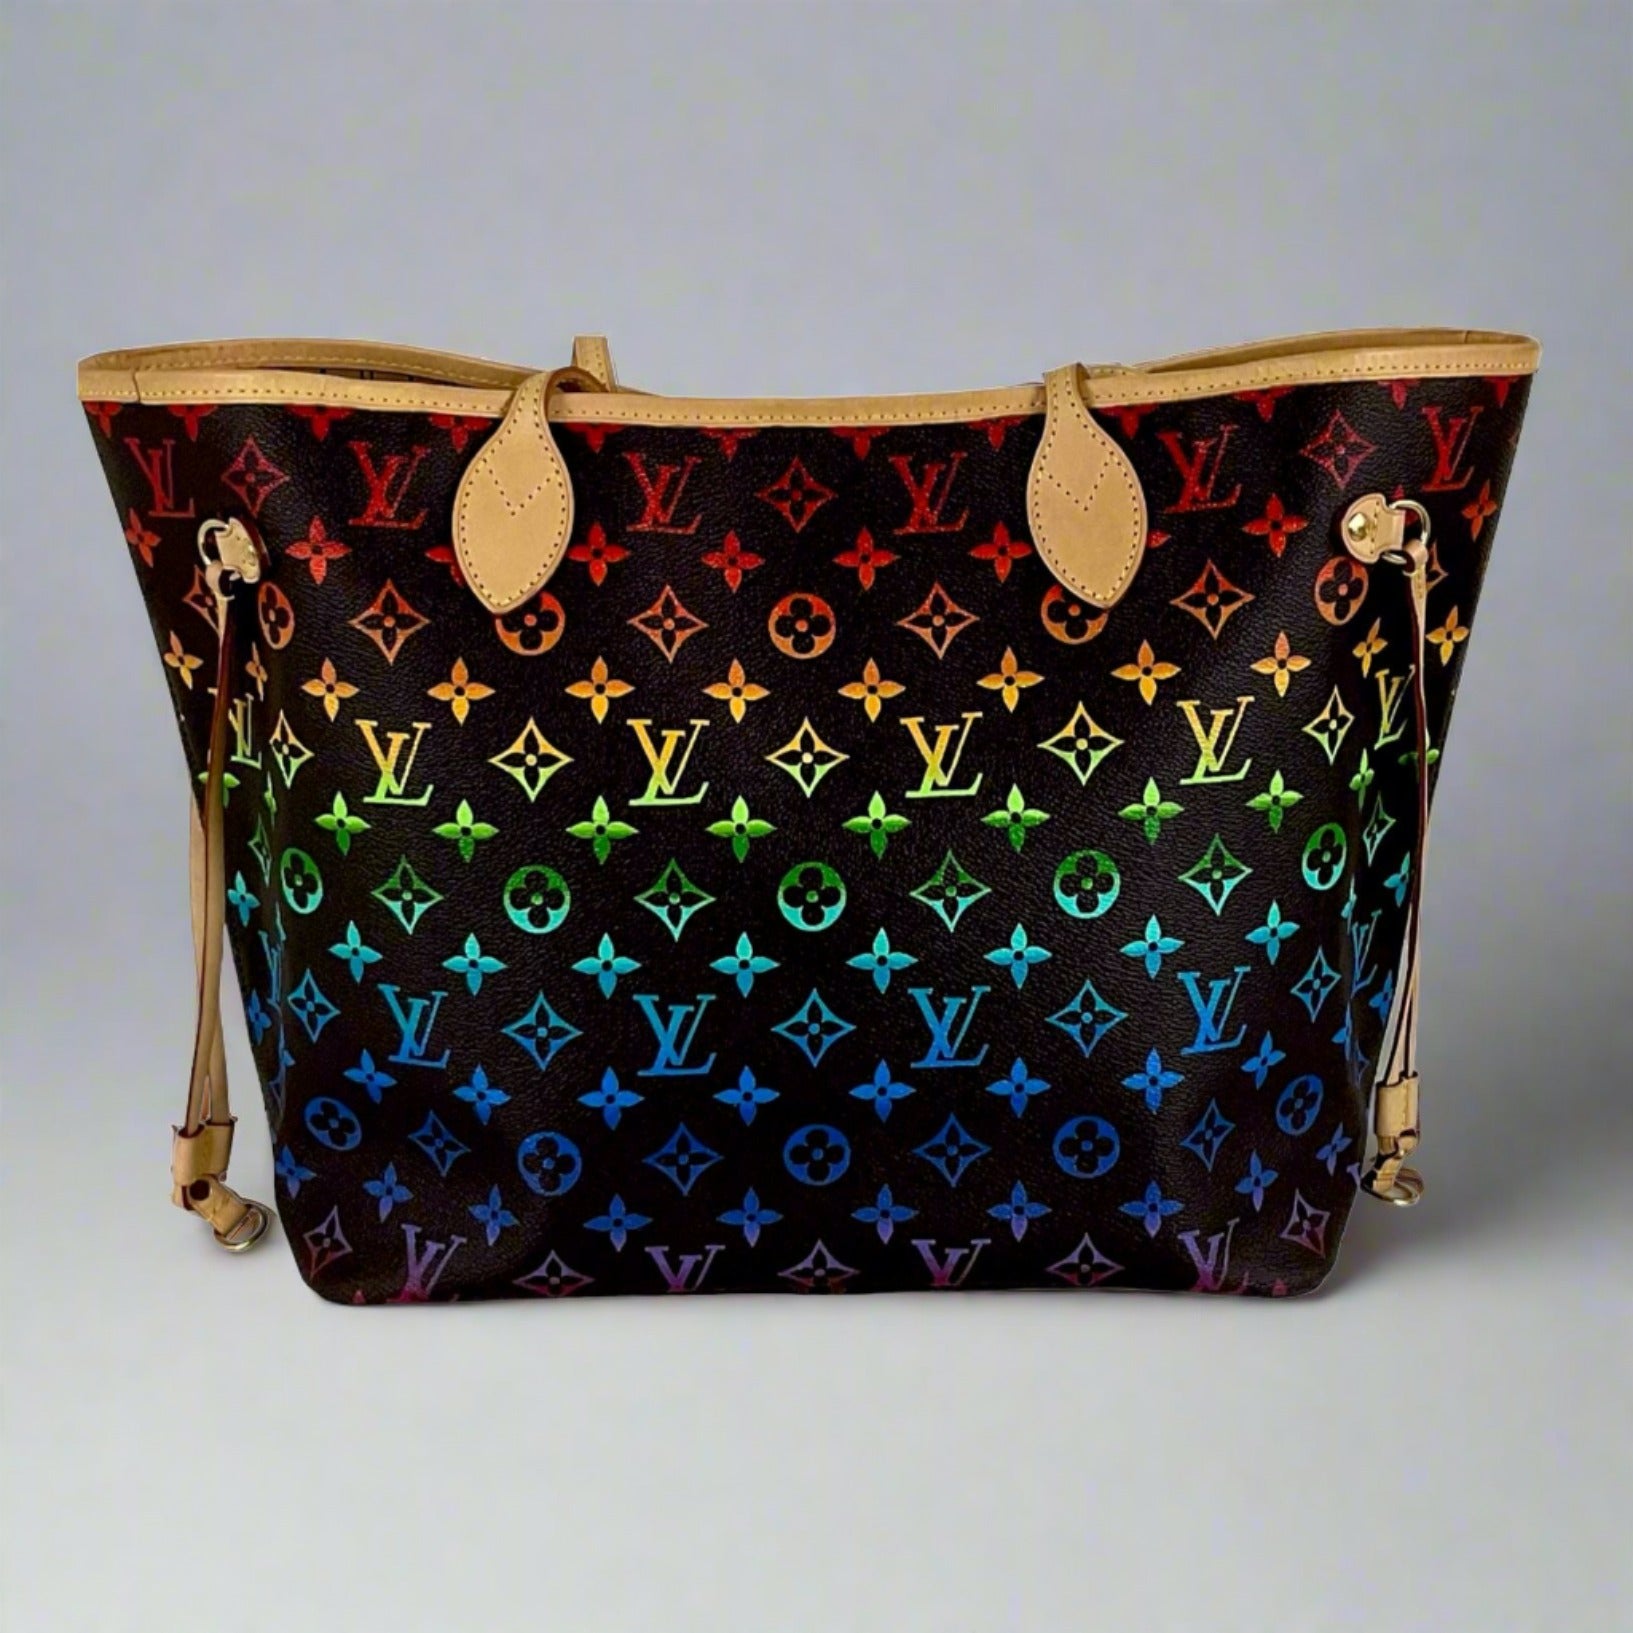 Woman Transforms Louis Vuitton Shopping Bag Into Stunning Handbag